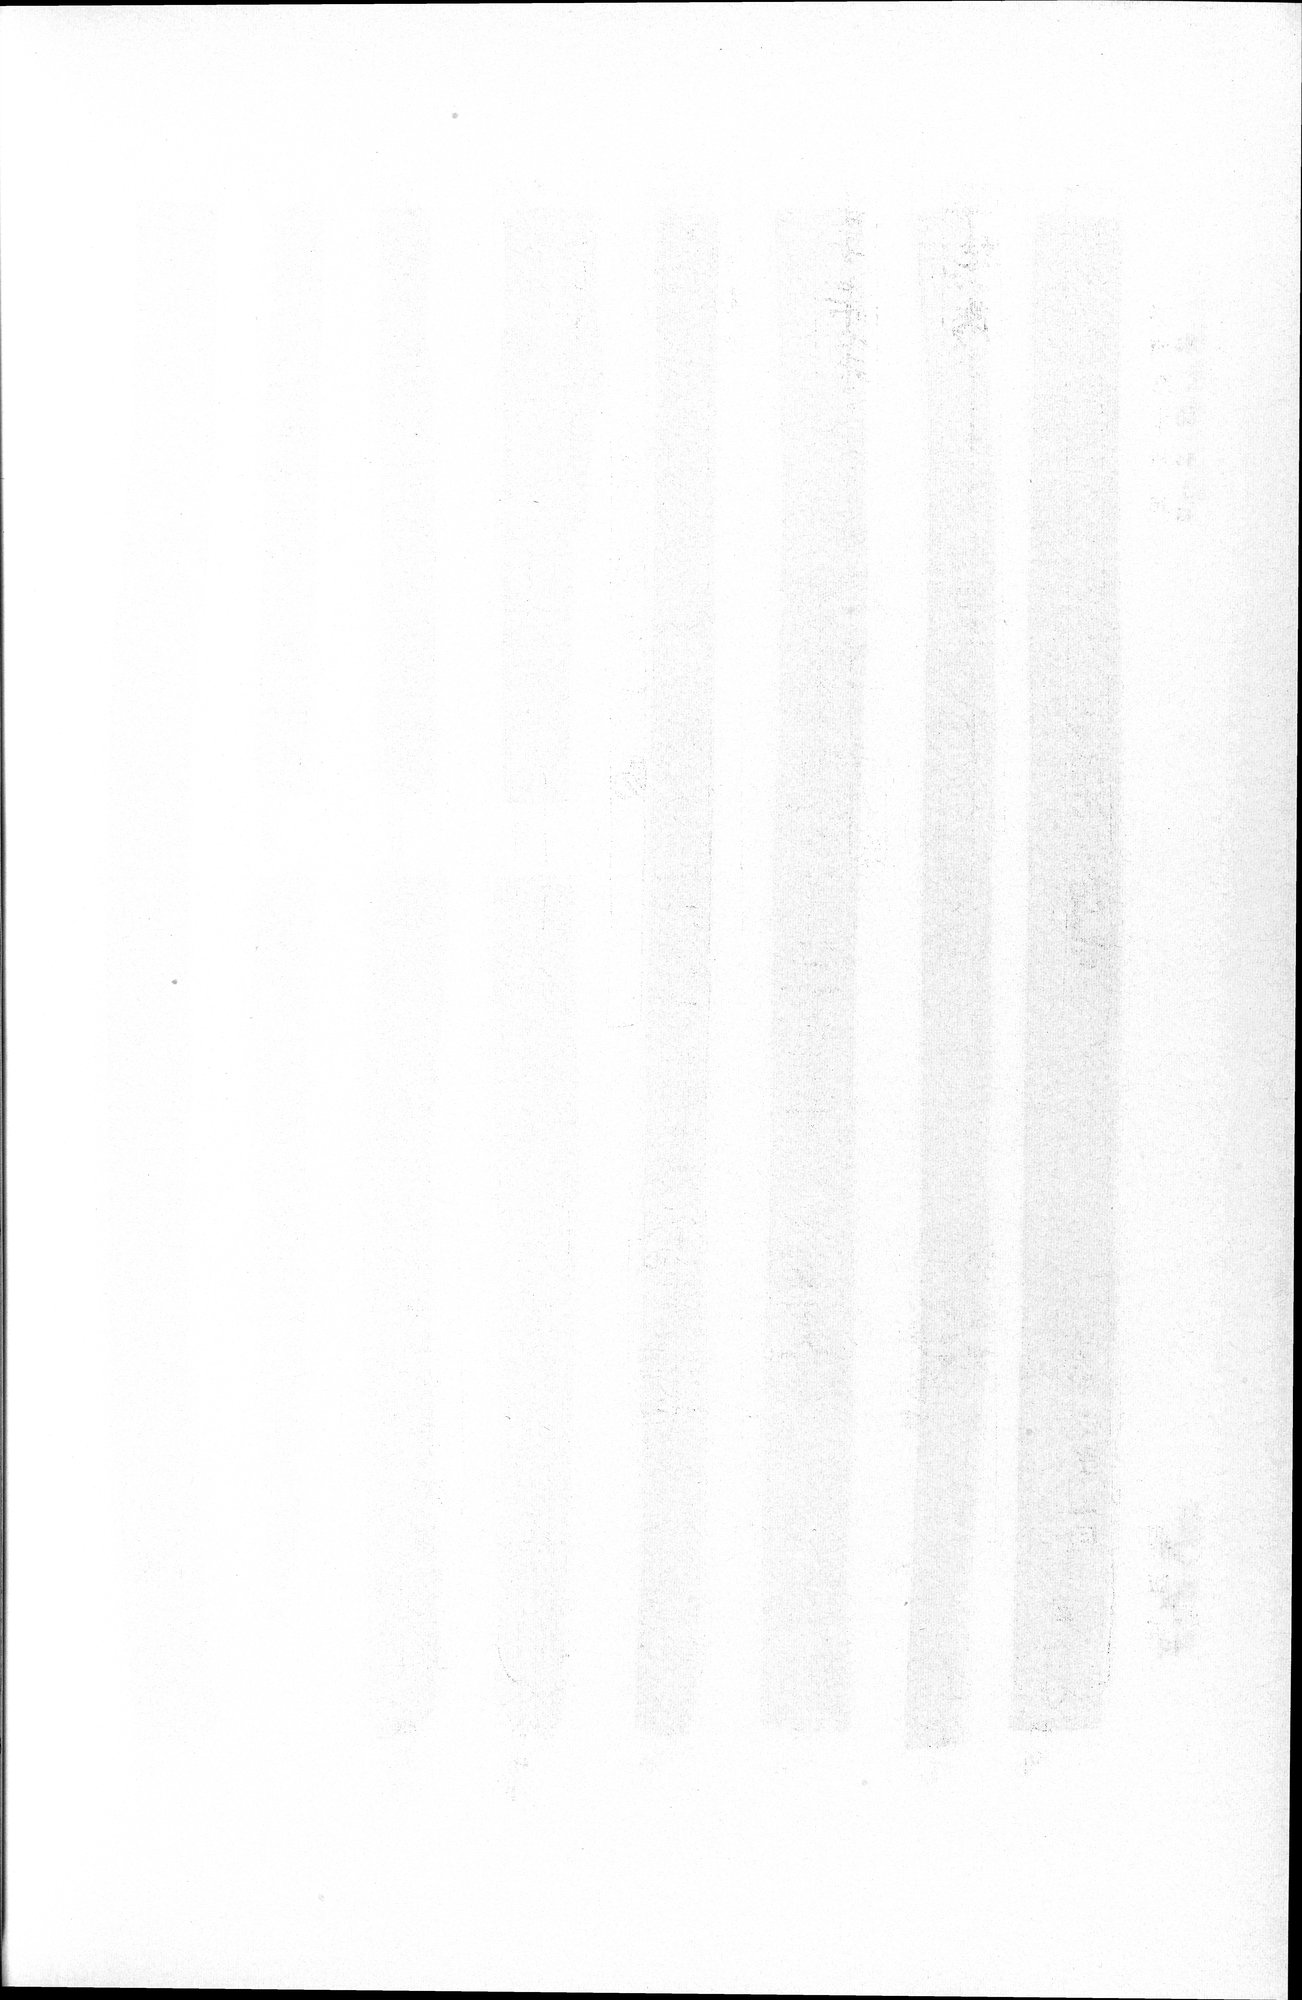 羅布淖爾考古記 : vol.1 / Page 370 (Grayscale High Resolution Image)